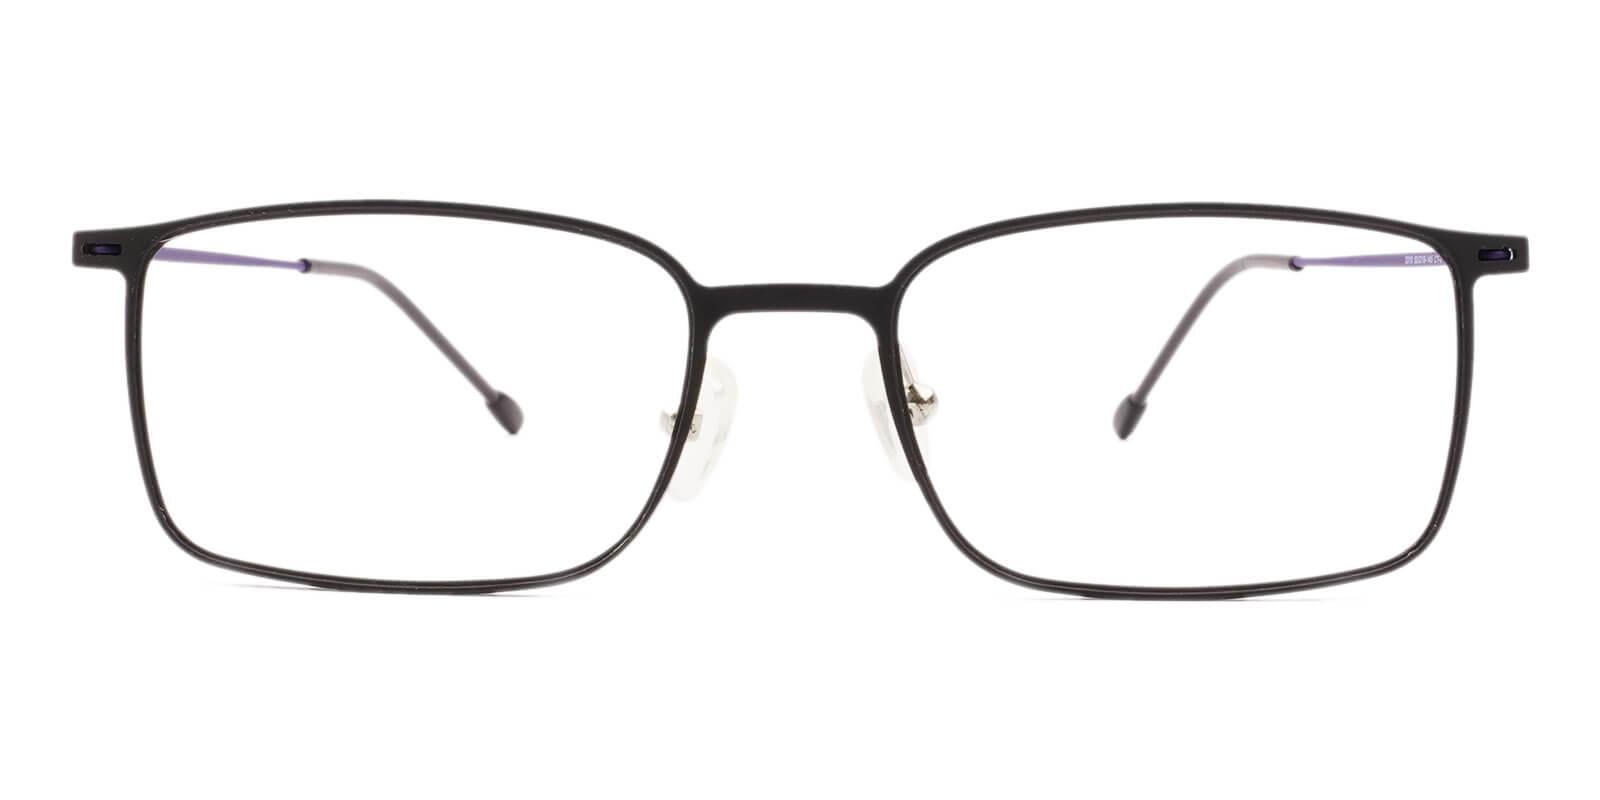 Philadelphia Black Combination Lightweight , NosePads , Eyeglasses Frames from ABBE Glasses